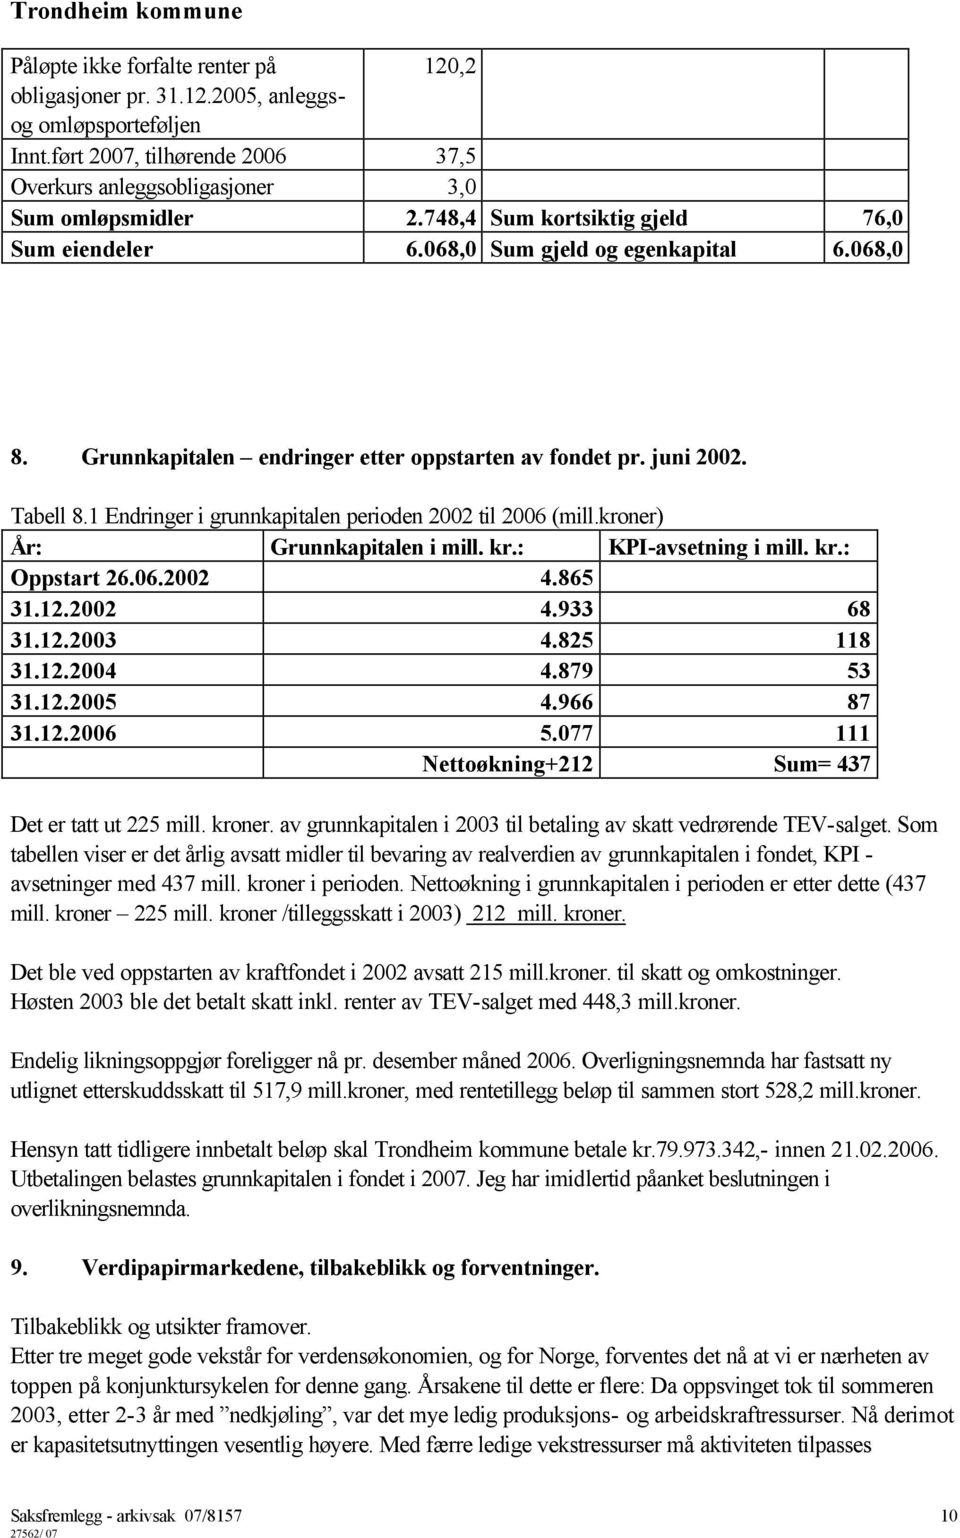 1 Endringer i grunnkapitalen perioden 2002 til 2006 (mill.kroner) År: Grunnkapitalen i mill. kr.: KPI-avsetning i mill. kr.: Oppstart 26.06.2002 4.865 31.12.2002 4.933 68 31.12.2003 4.825 118 31.12.2004 4.